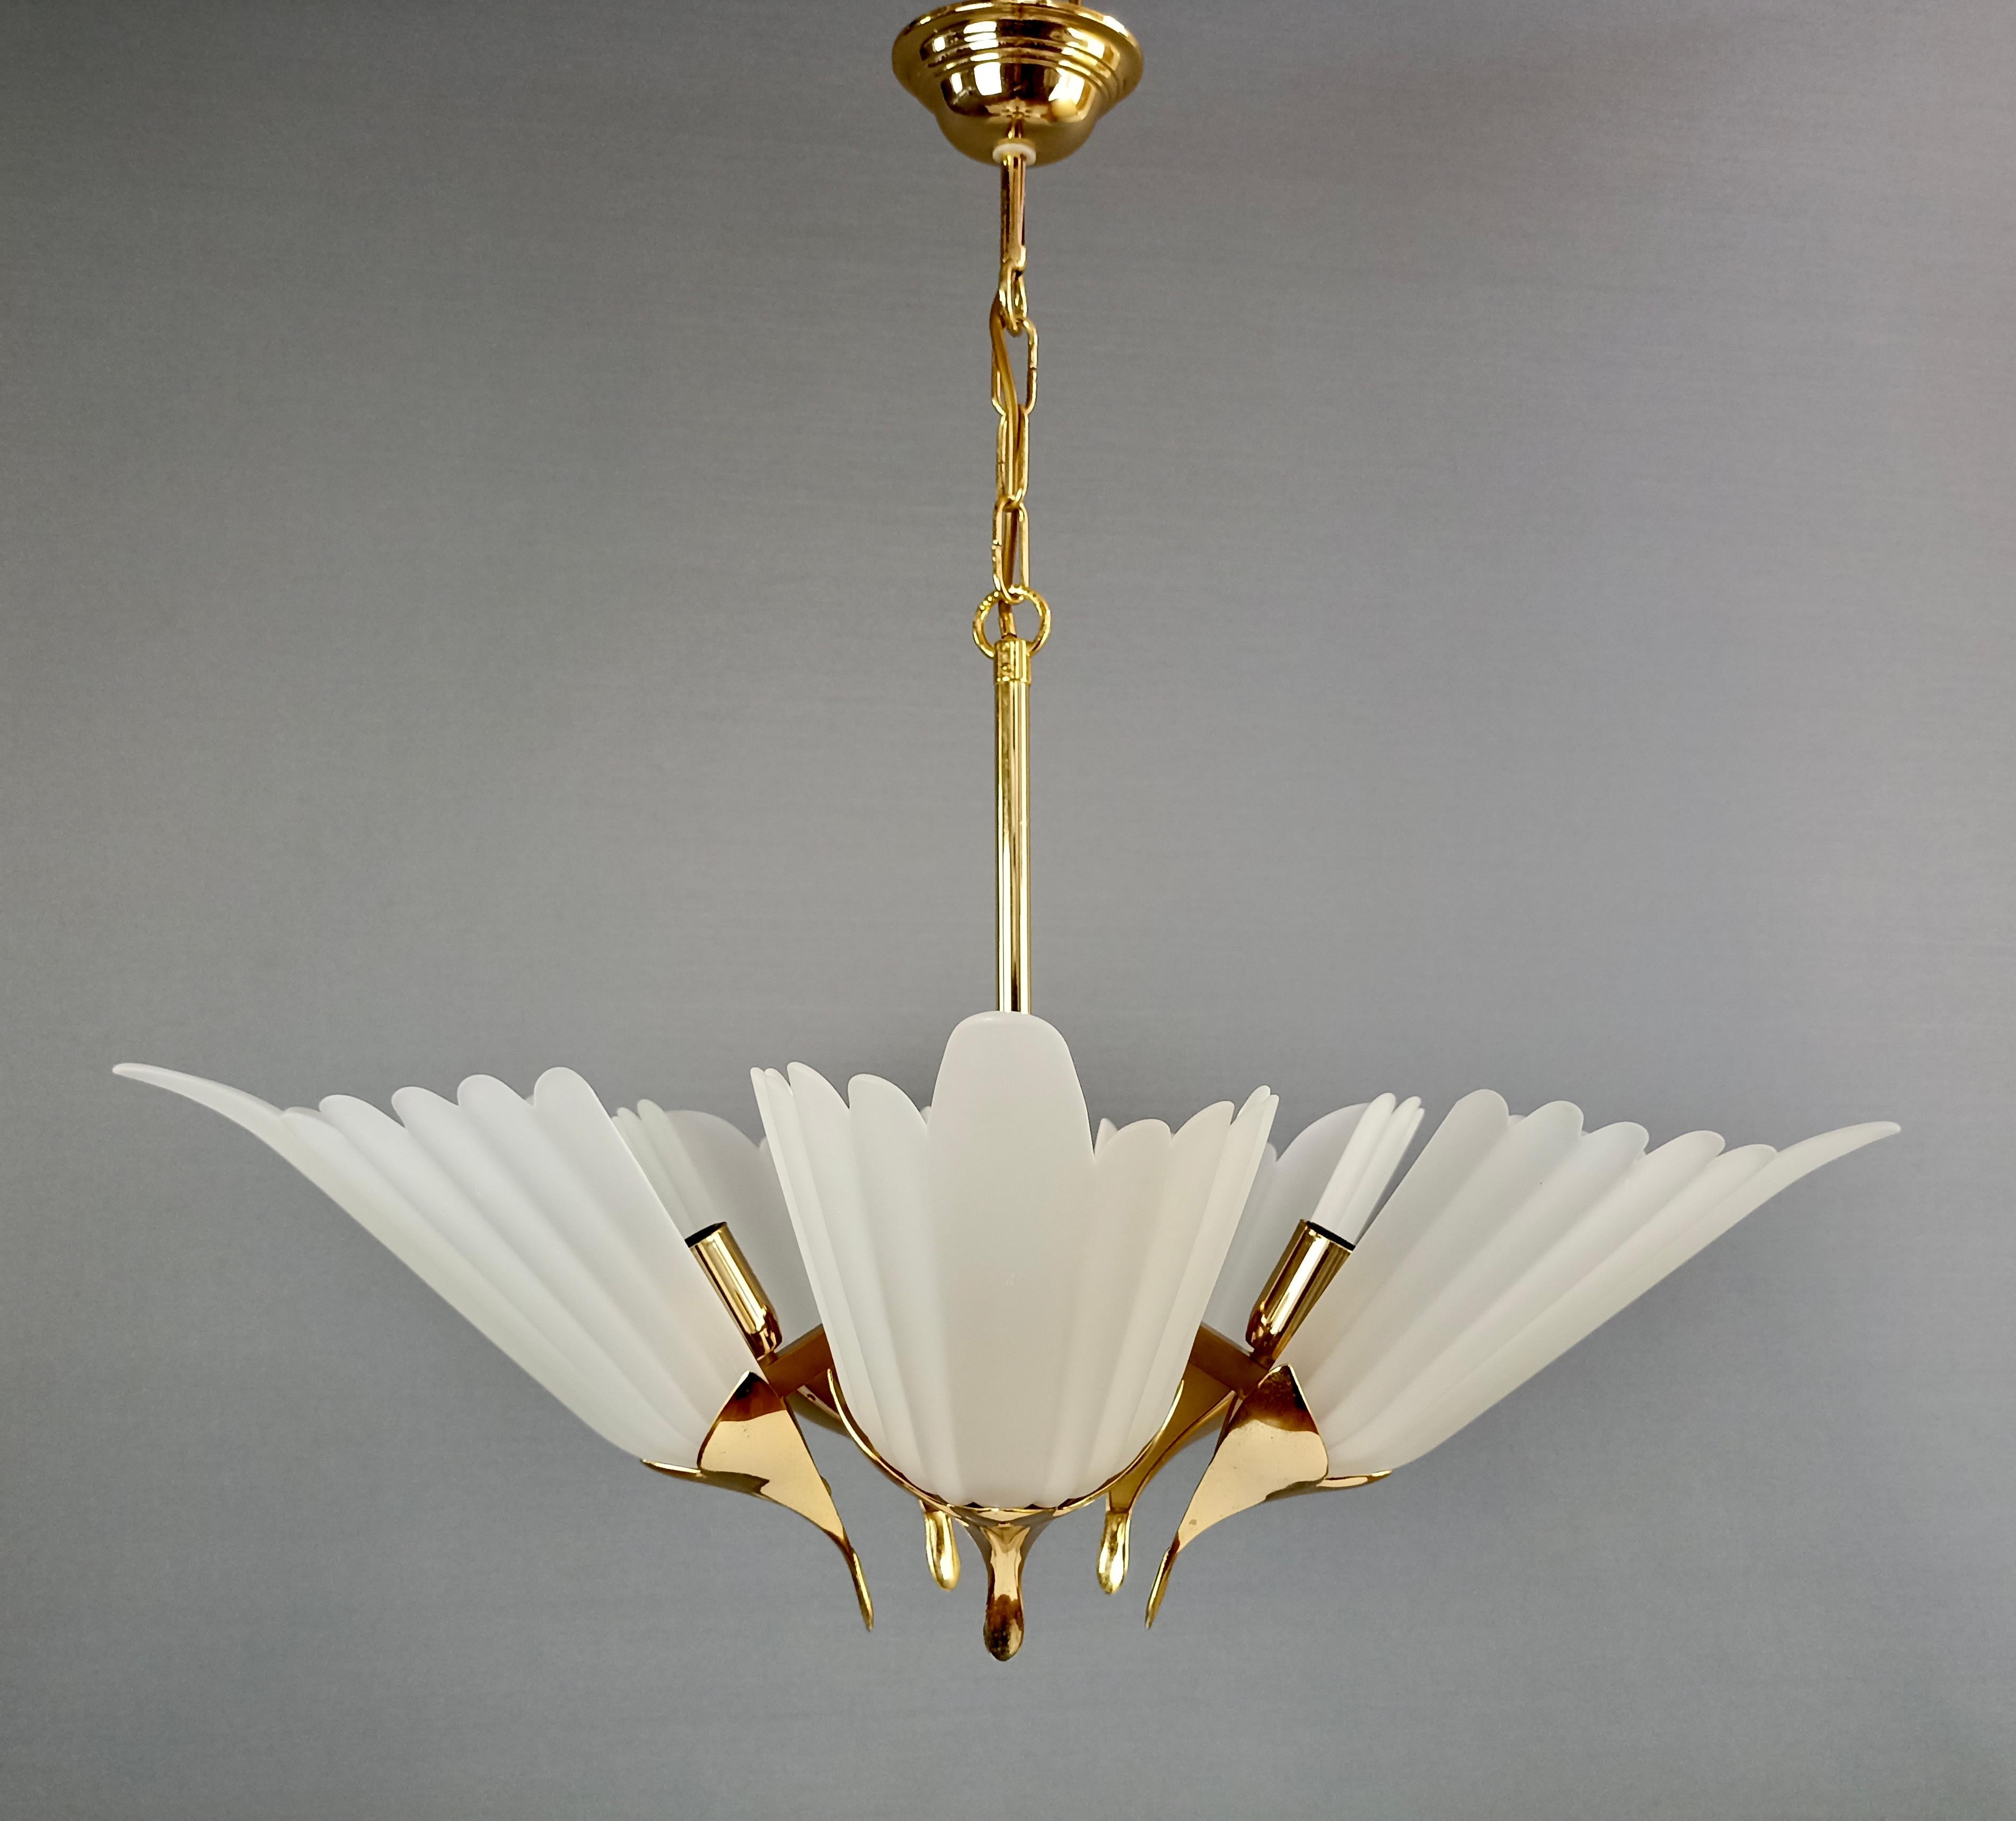 Ein schöner und seltener fünfflammiger Kronleuchter der Marke F.Fabbian. Italien, 1980er Jahre.
Die Struktur besteht aus vergoldetem Messing und Metall, die Lampenschirme sind aus geätztem Kunstglas, das in einer schönen Blütenform geformt ist.